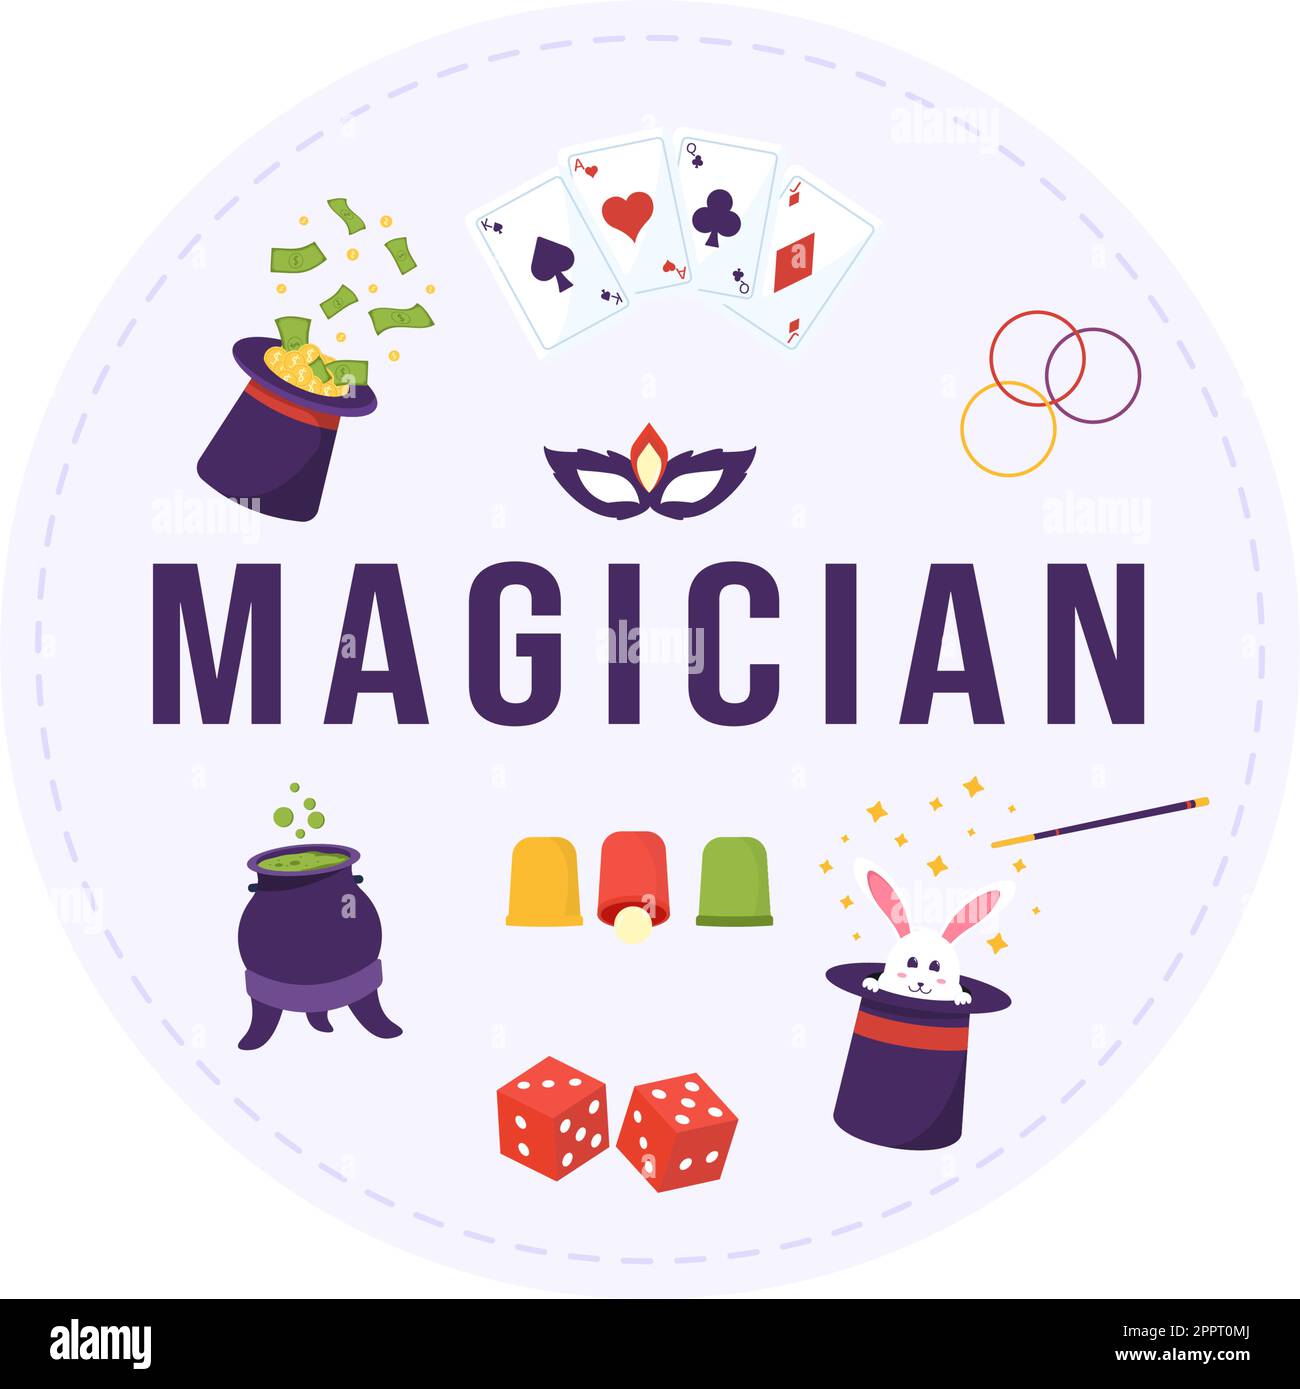 Zauberer Illusionist beschwört Tricks und winkt einen Zauberstab über seinen geheimnisvollen Hut auf einer Bühne in Template Hand Drawn Cartoon Flat Illustration Stock Vektor